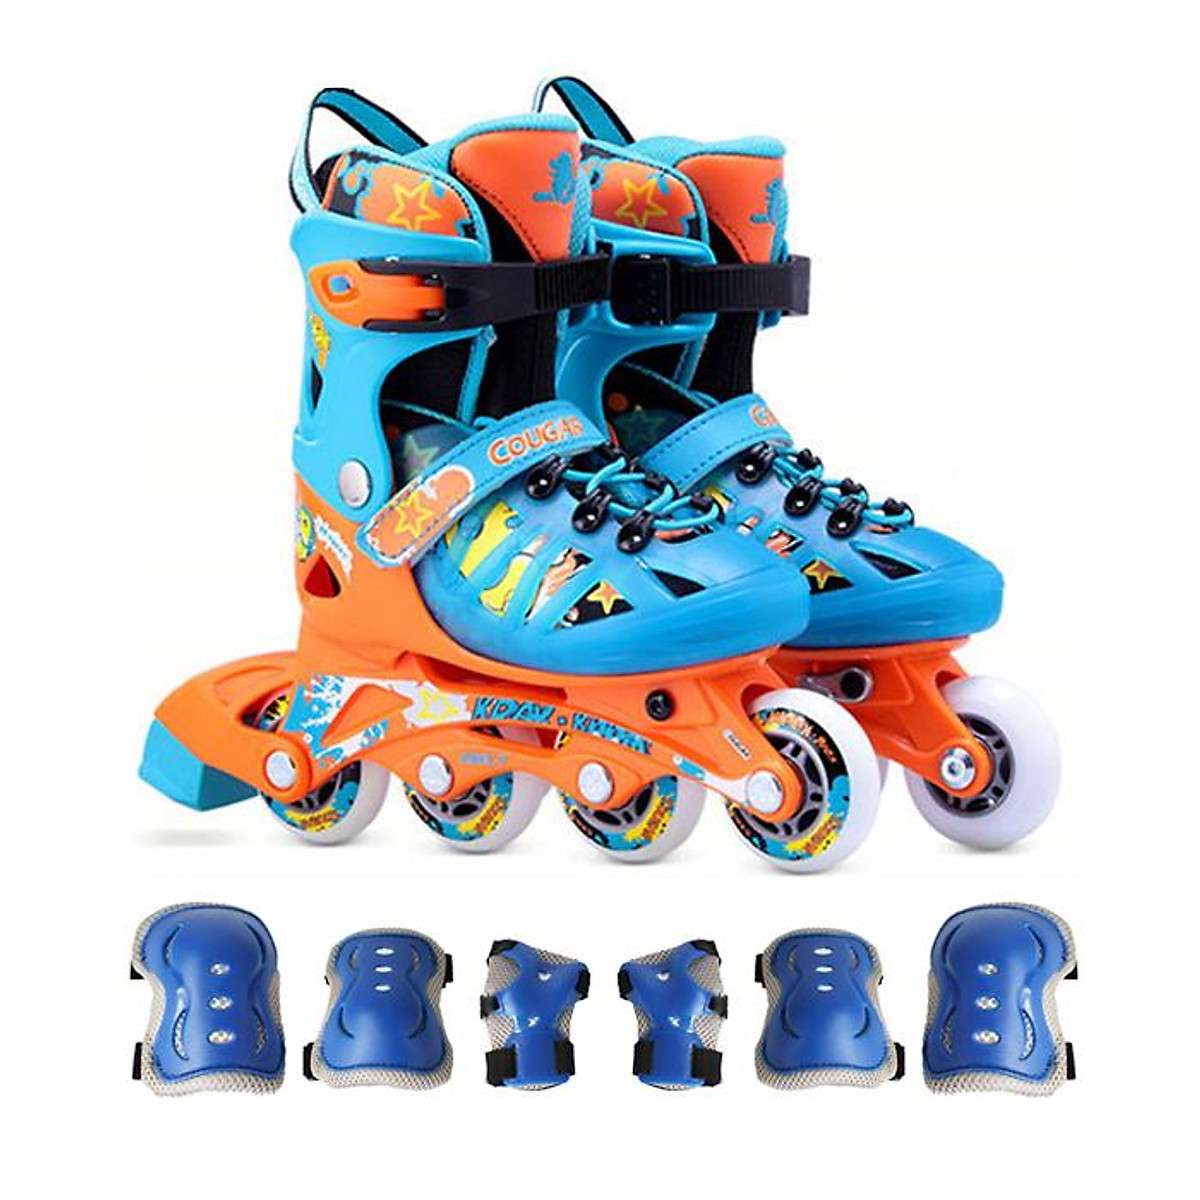 giày patin cougar 867 màu cam xanh